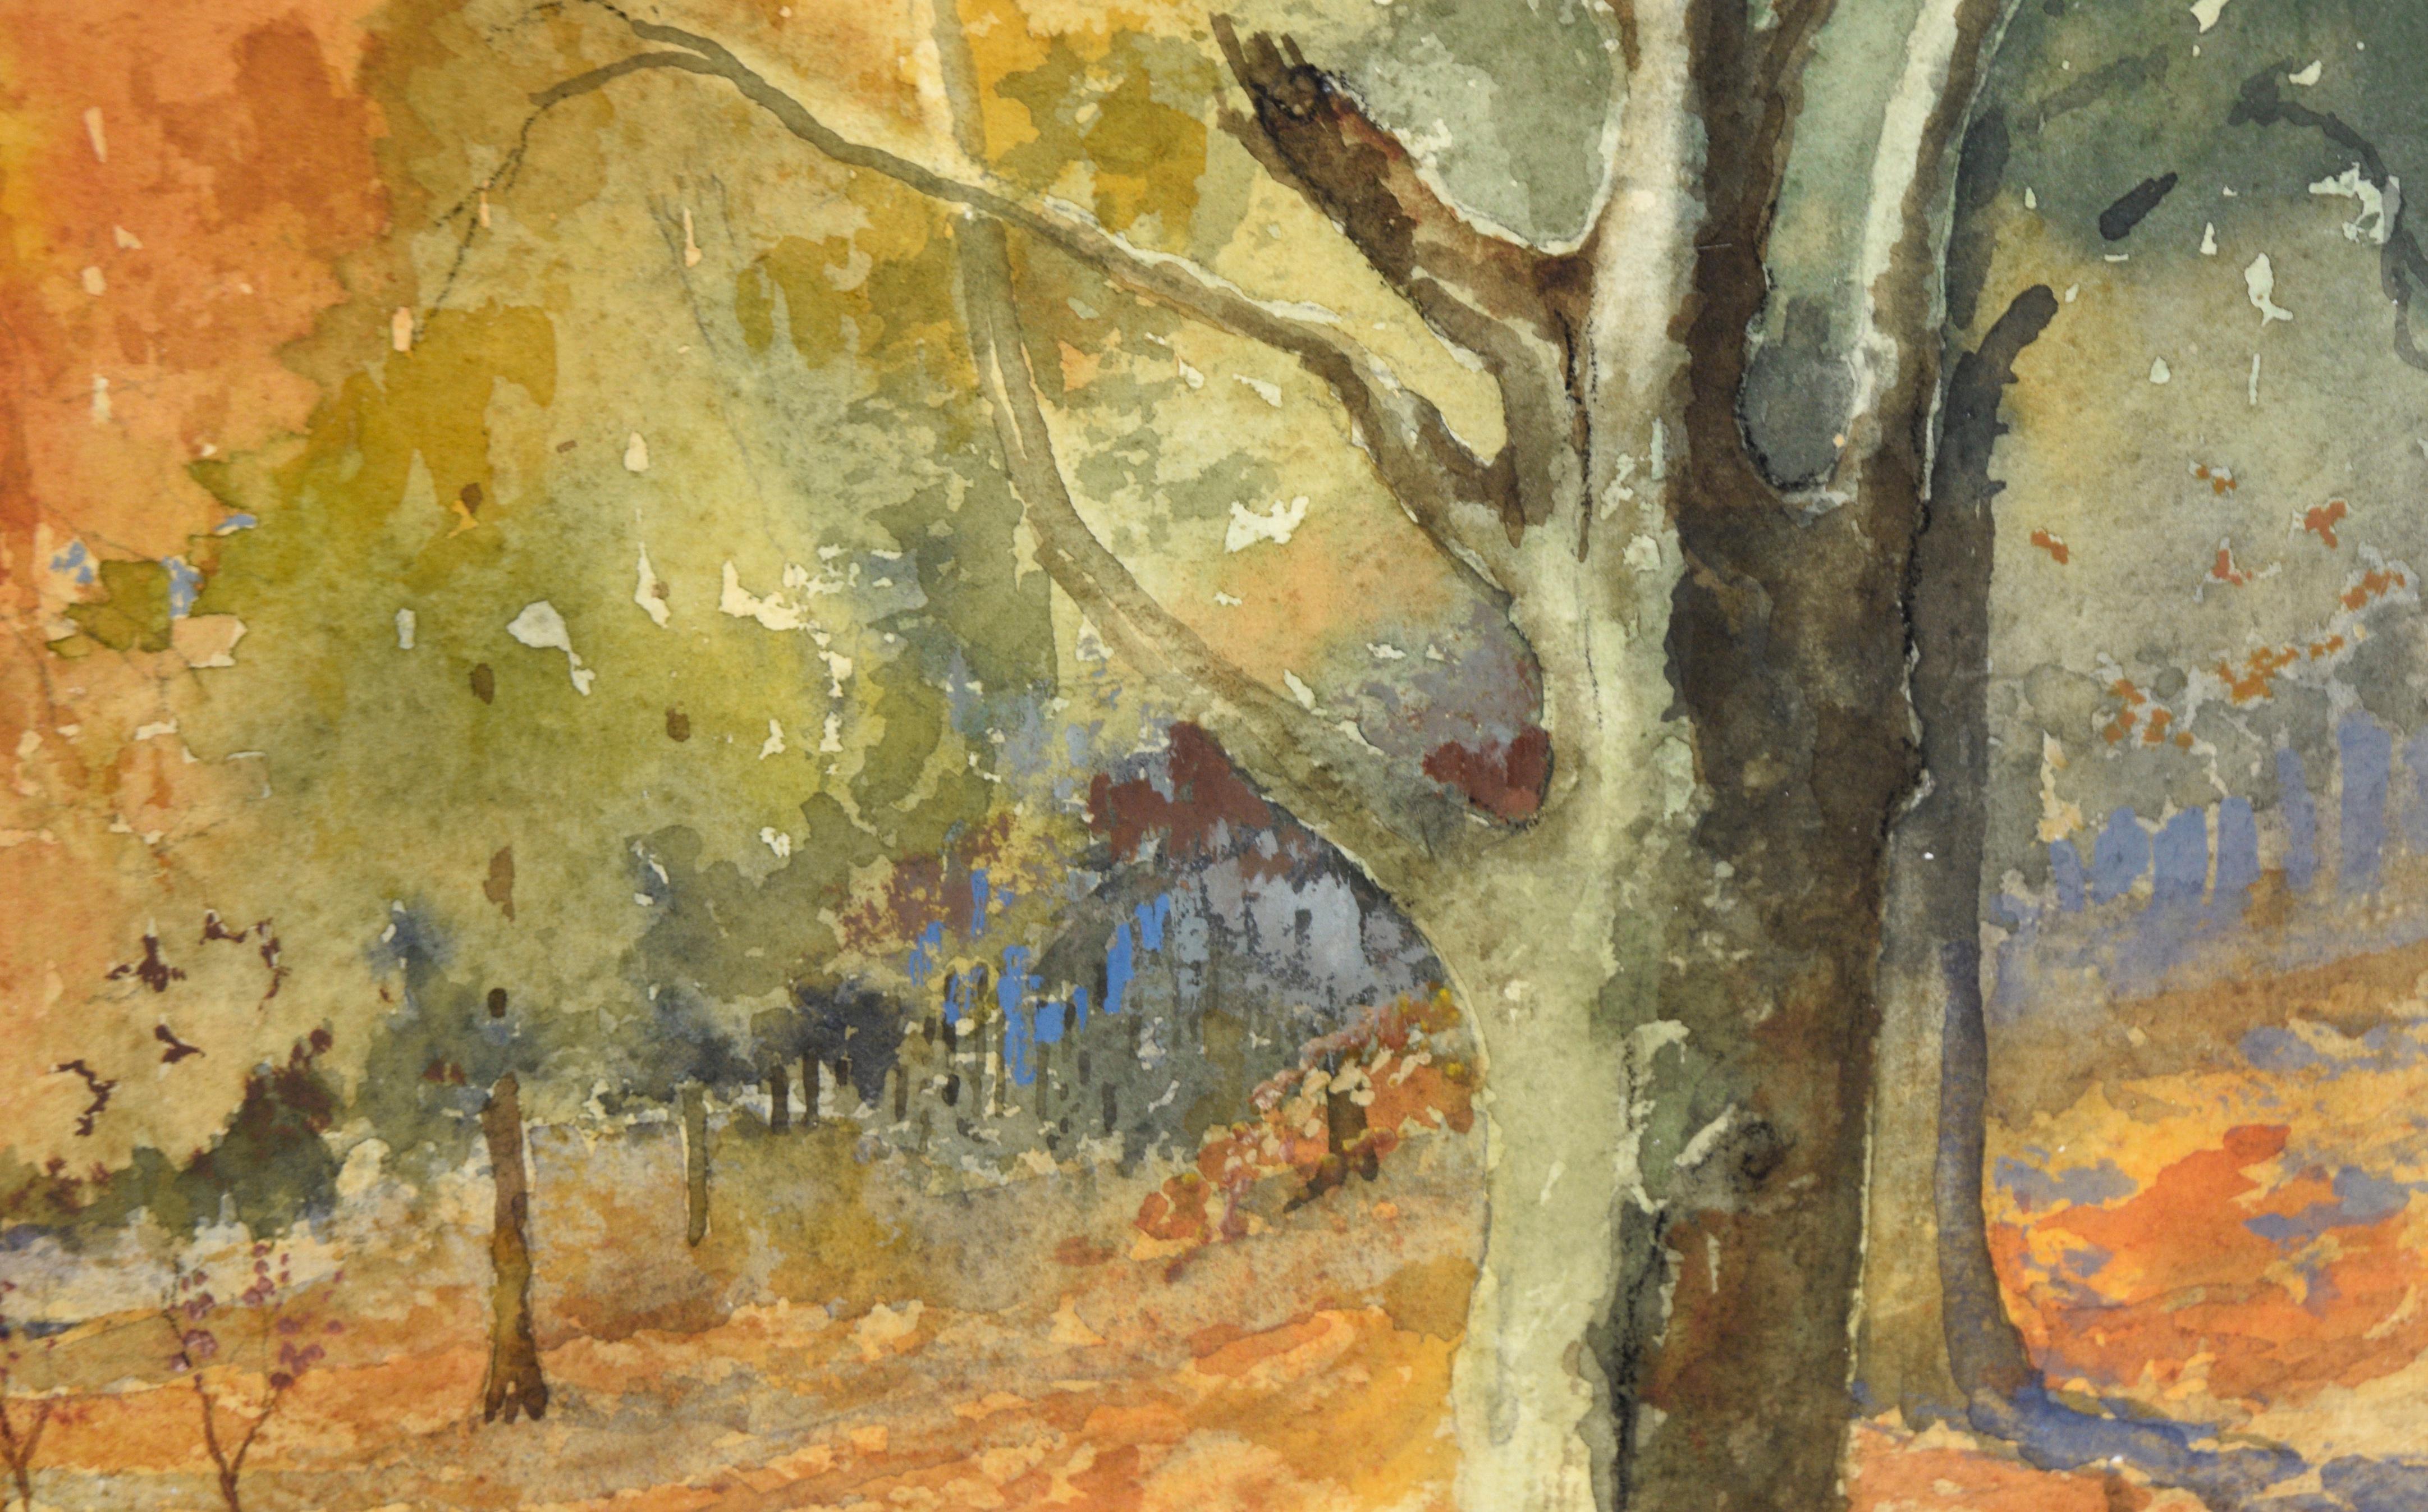 Queensdown Warren, Kent – Herbstwald-Interieurlandschaft in Aquarell

Farbenfrohe Waldlandschaft von L.B.H. Cremer (20. Jahrhundert). Die Farbschichten erzeugen einen tiefen Wald voller orangefarbener, gelber und grüner Blätter. Dieses Werk ist eine